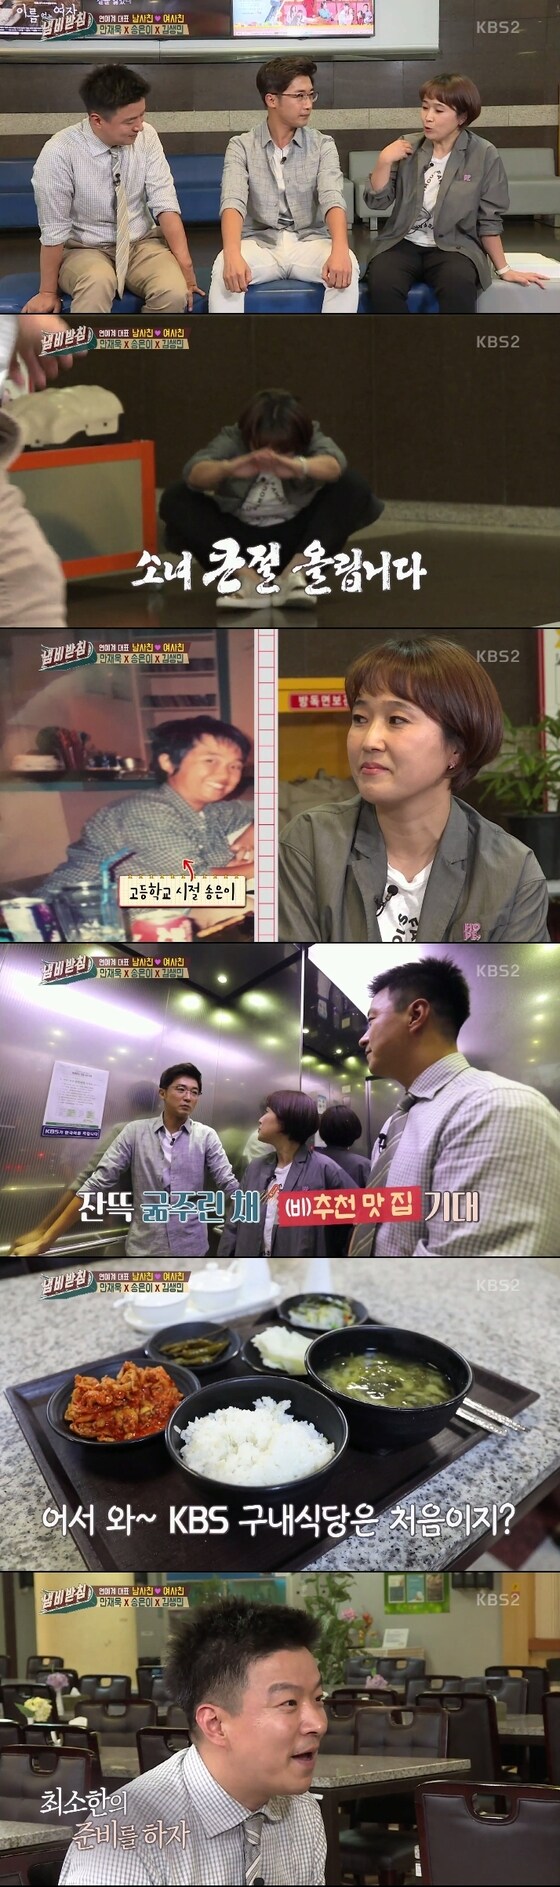 KBS 2TV 냄비받침 © News1